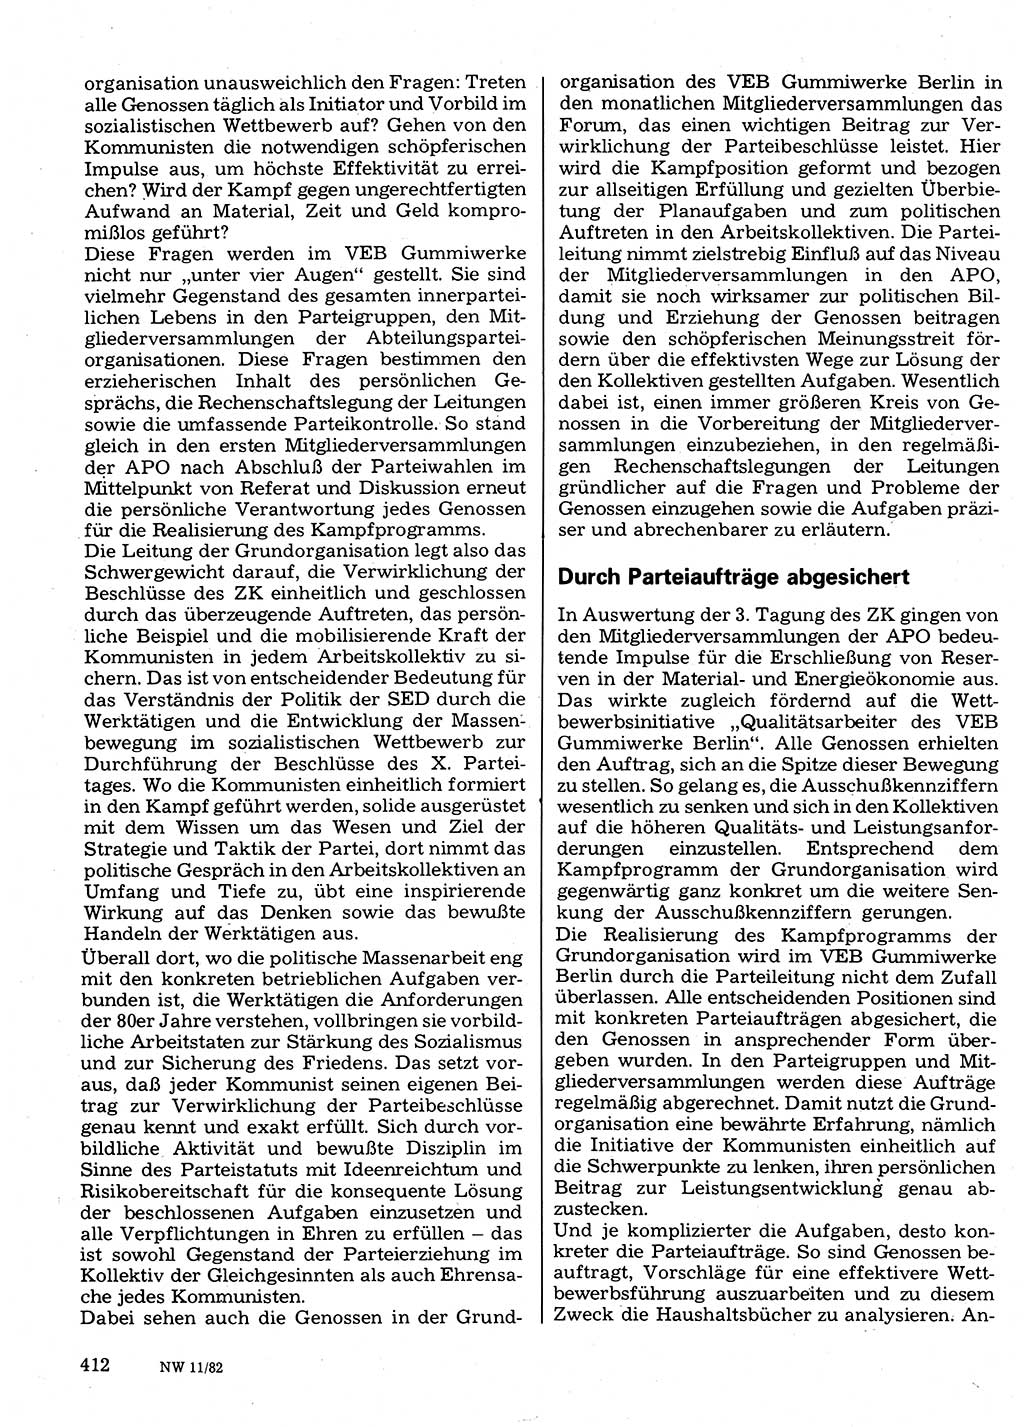 Neuer Weg (NW), Organ des Zentralkomitees (ZK) der SED (Sozialistische Einheitspartei Deutschlands) für Fragen des Parteilebens, 37. Jahrgang [Deutsche Demokratische Republik (DDR)] 1982, Seite 412 (NW ZK SED DDR 1982, S. 412)